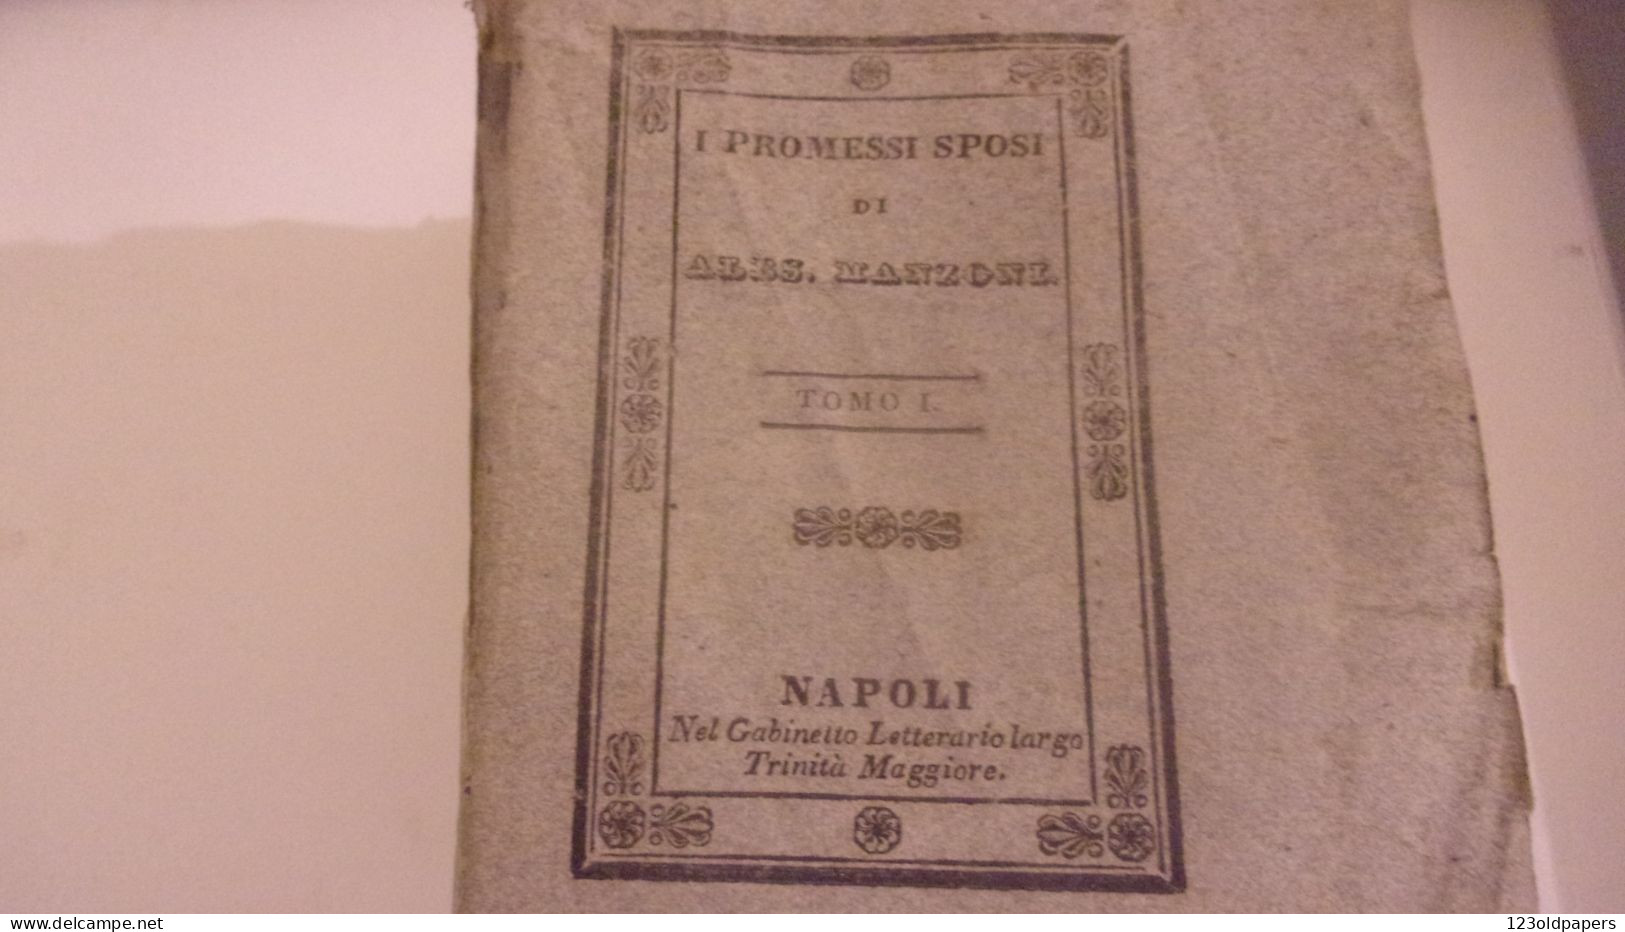 1836 6 VOL COMPLET I PROMESSI SPOSI DI ALES MANZONI  NAPOLI GABINETTO LETTERARIO - Oude Boeken